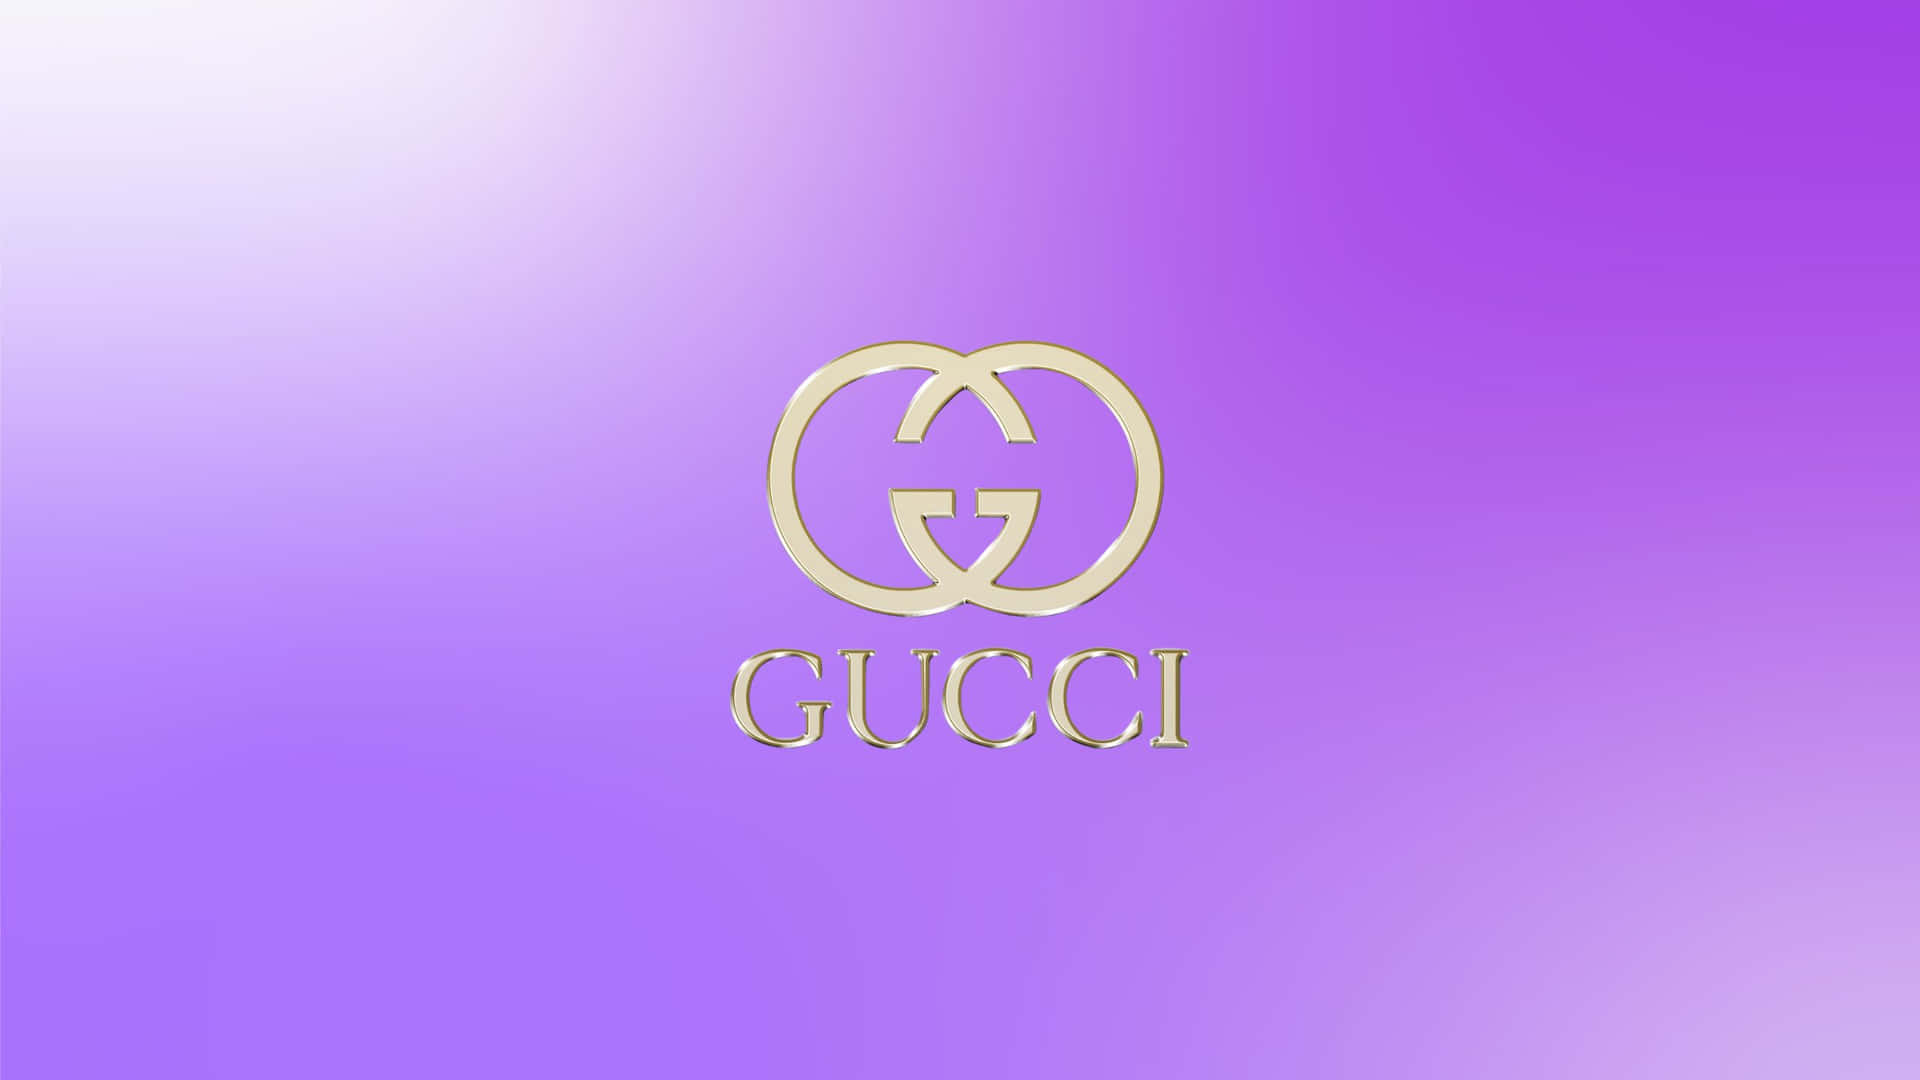 Manténun Estilo Elegante Con El Fondo De Pantalla De Gucci En Color Púrpura. Fondo de pantalla